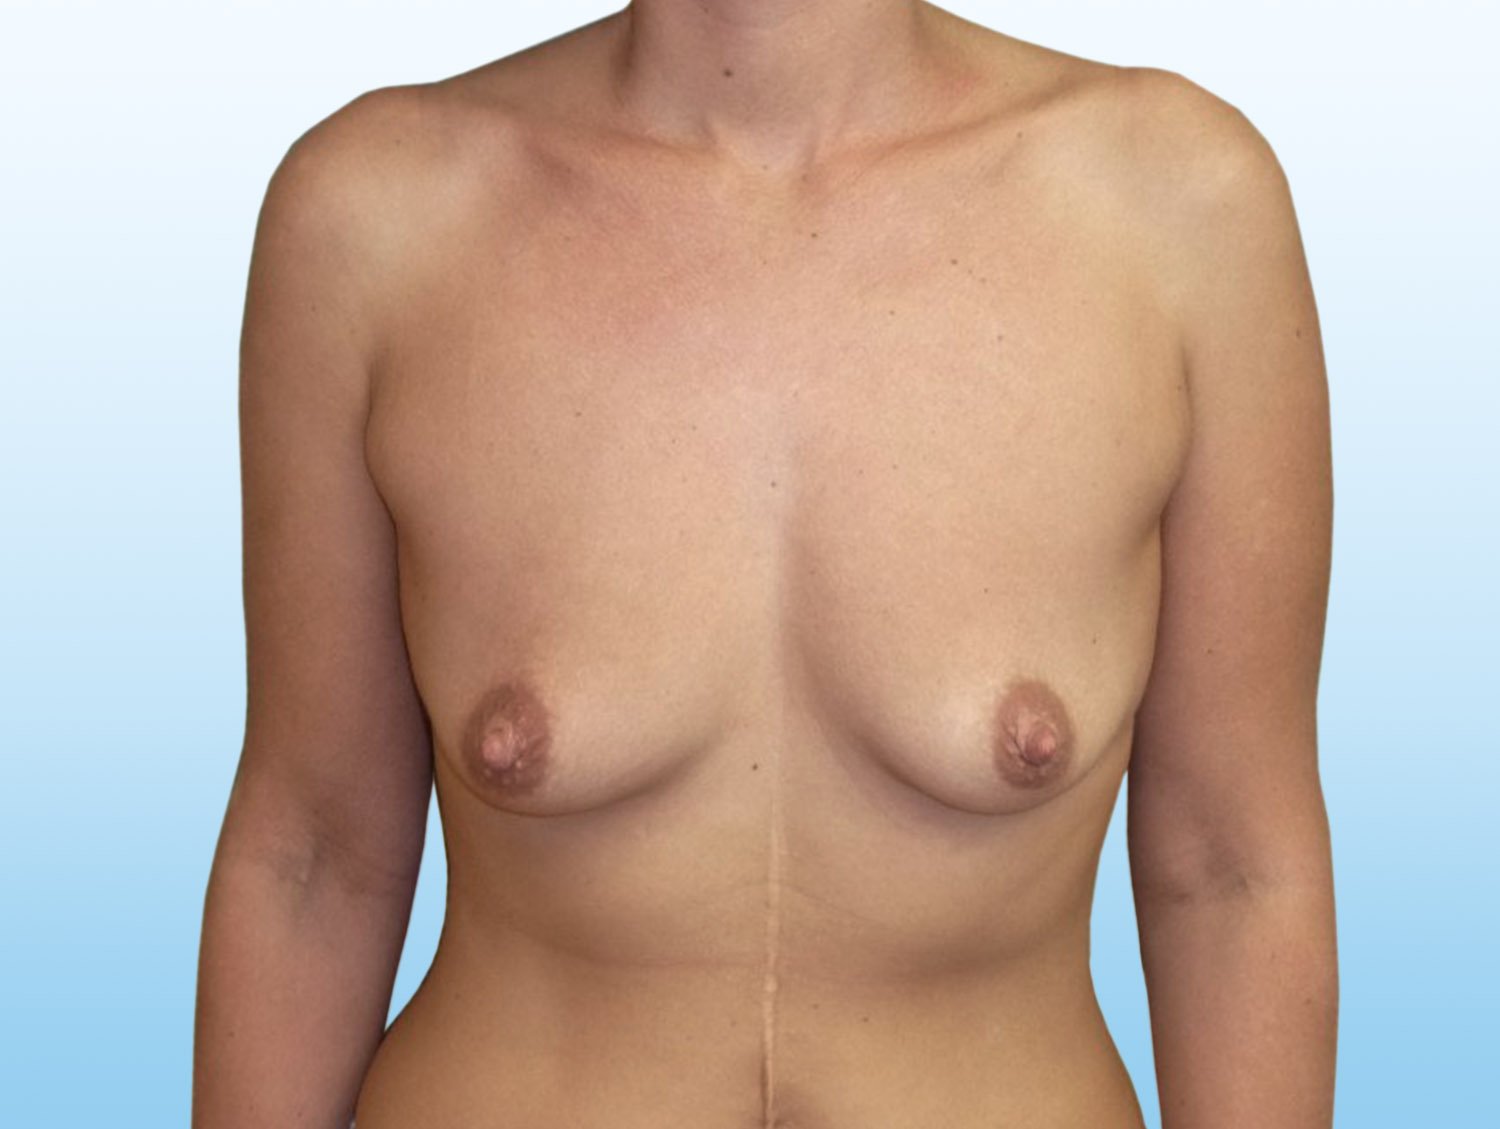 Výsledek zvětšení prsou pomocí augmentace - před zákrokem